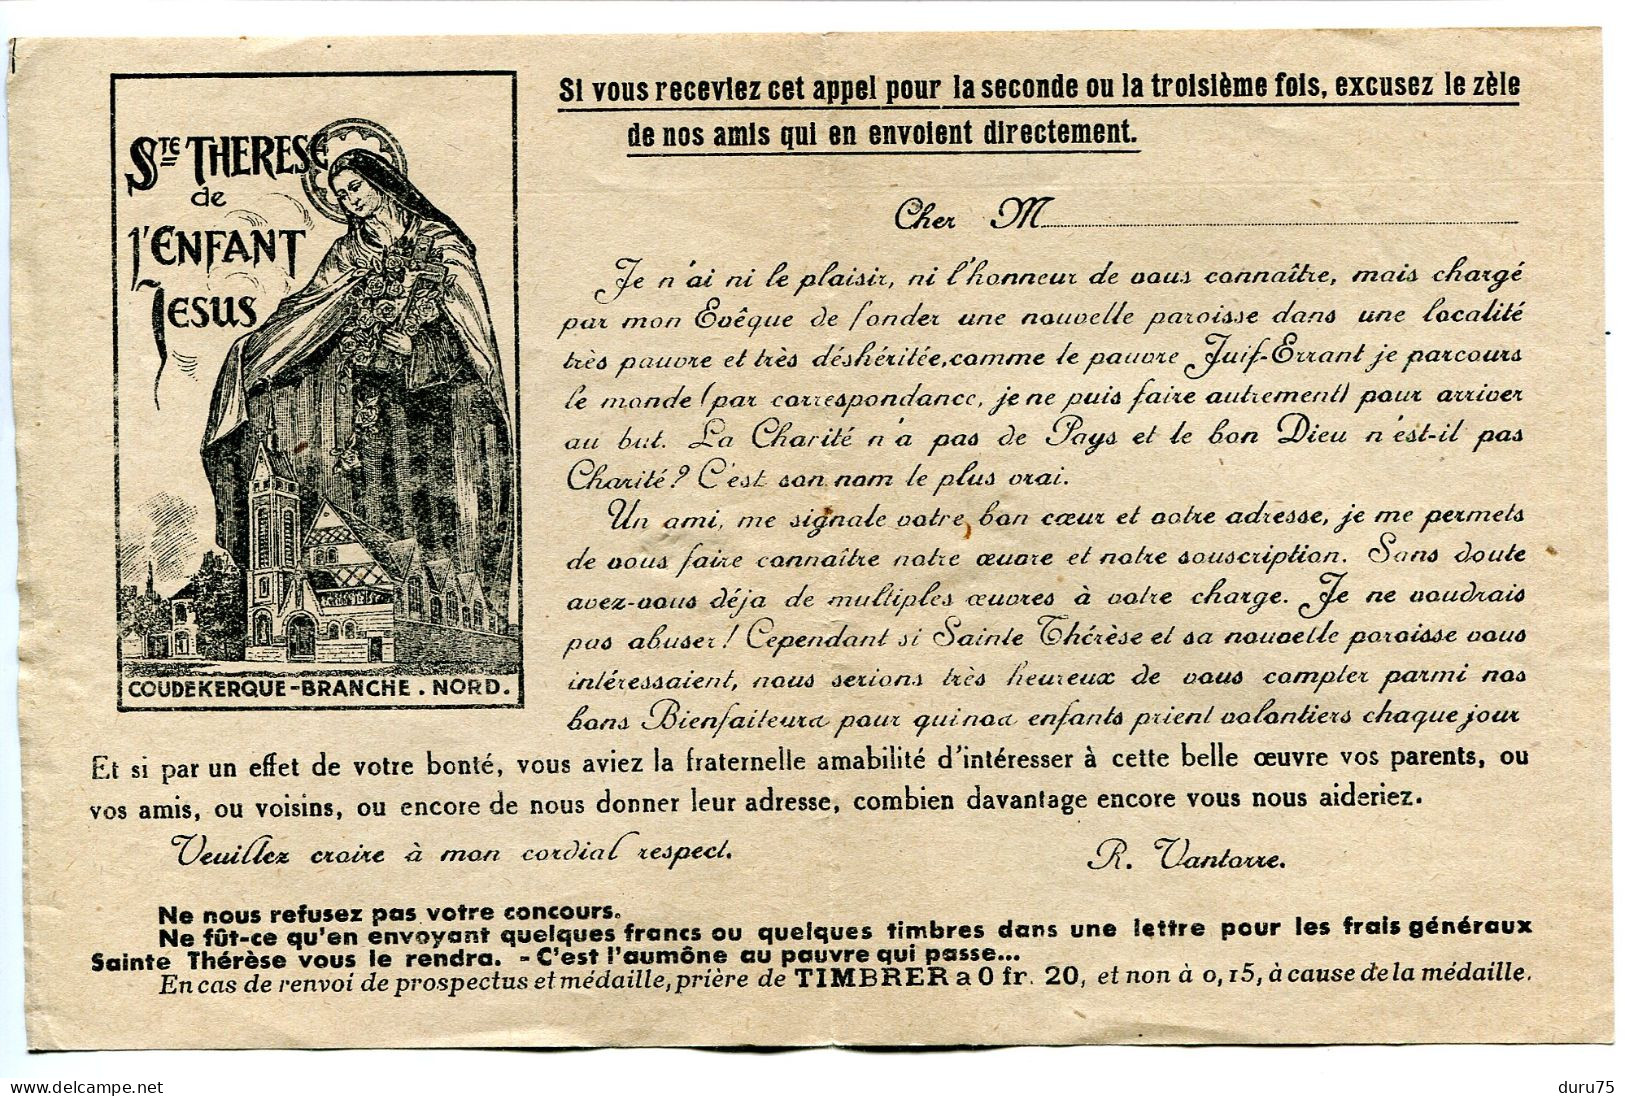 Document Bulletin De Souscription COUDEKERQUE BRANCHE Aidez Nous à Achever L'Eglise Ste Thérèse + Rappel - Religion & Esotérisme